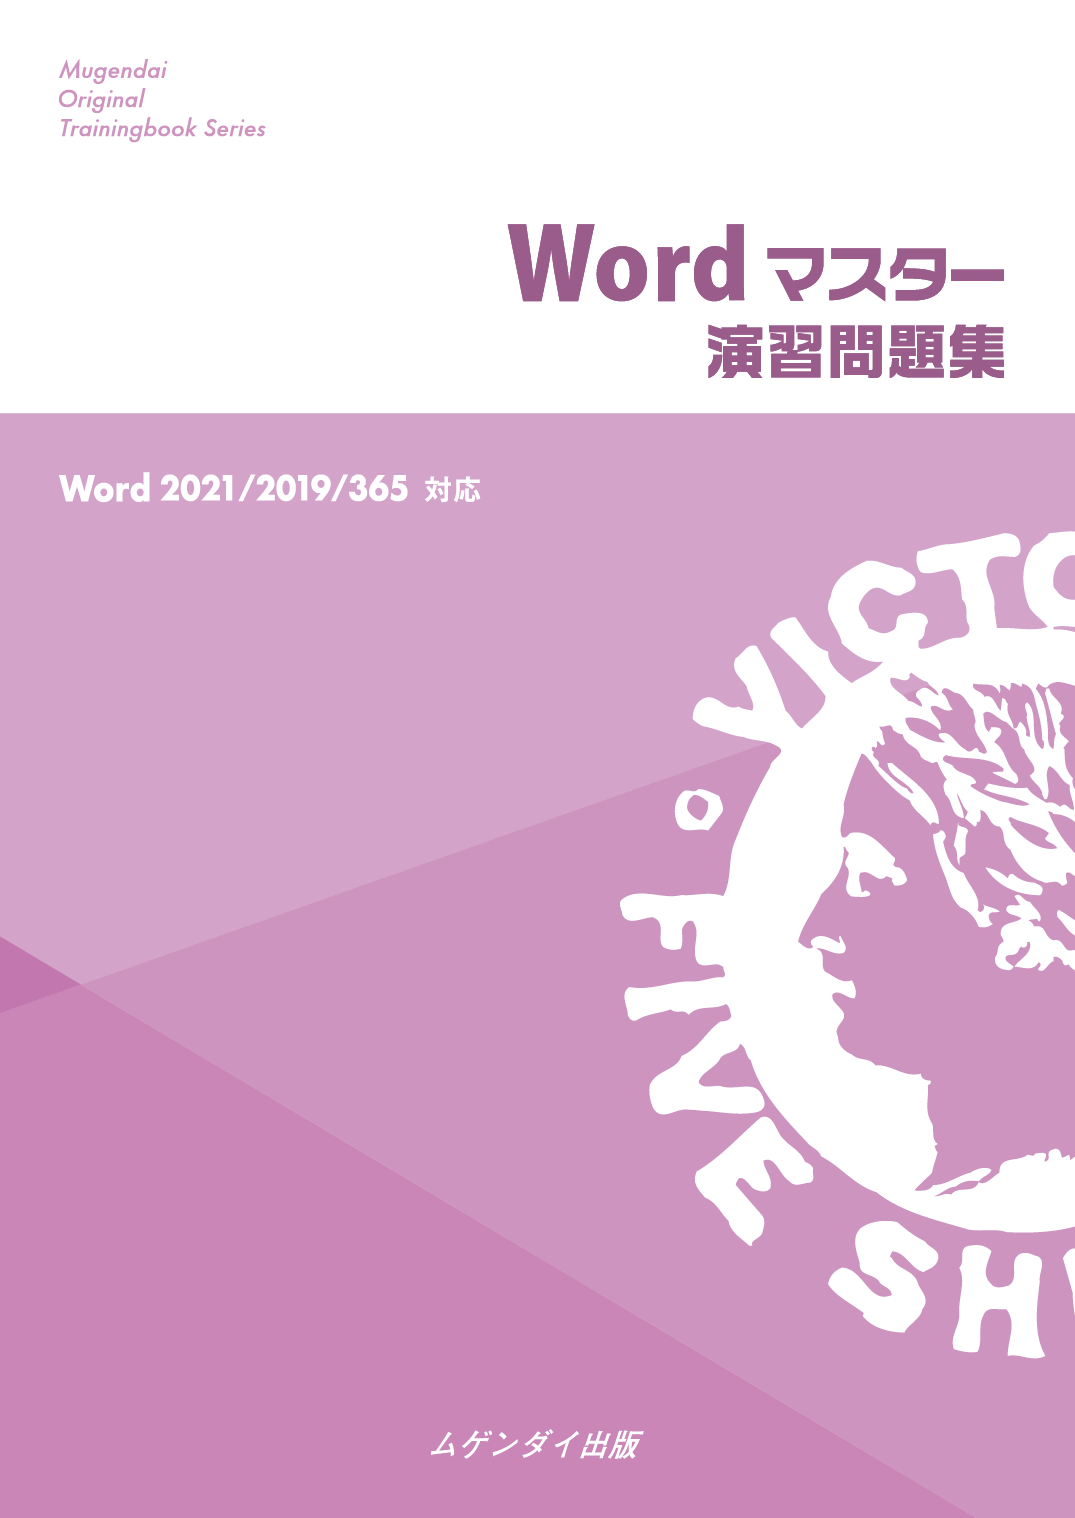 Wordマスター演習問題集 2021/2019/365対応